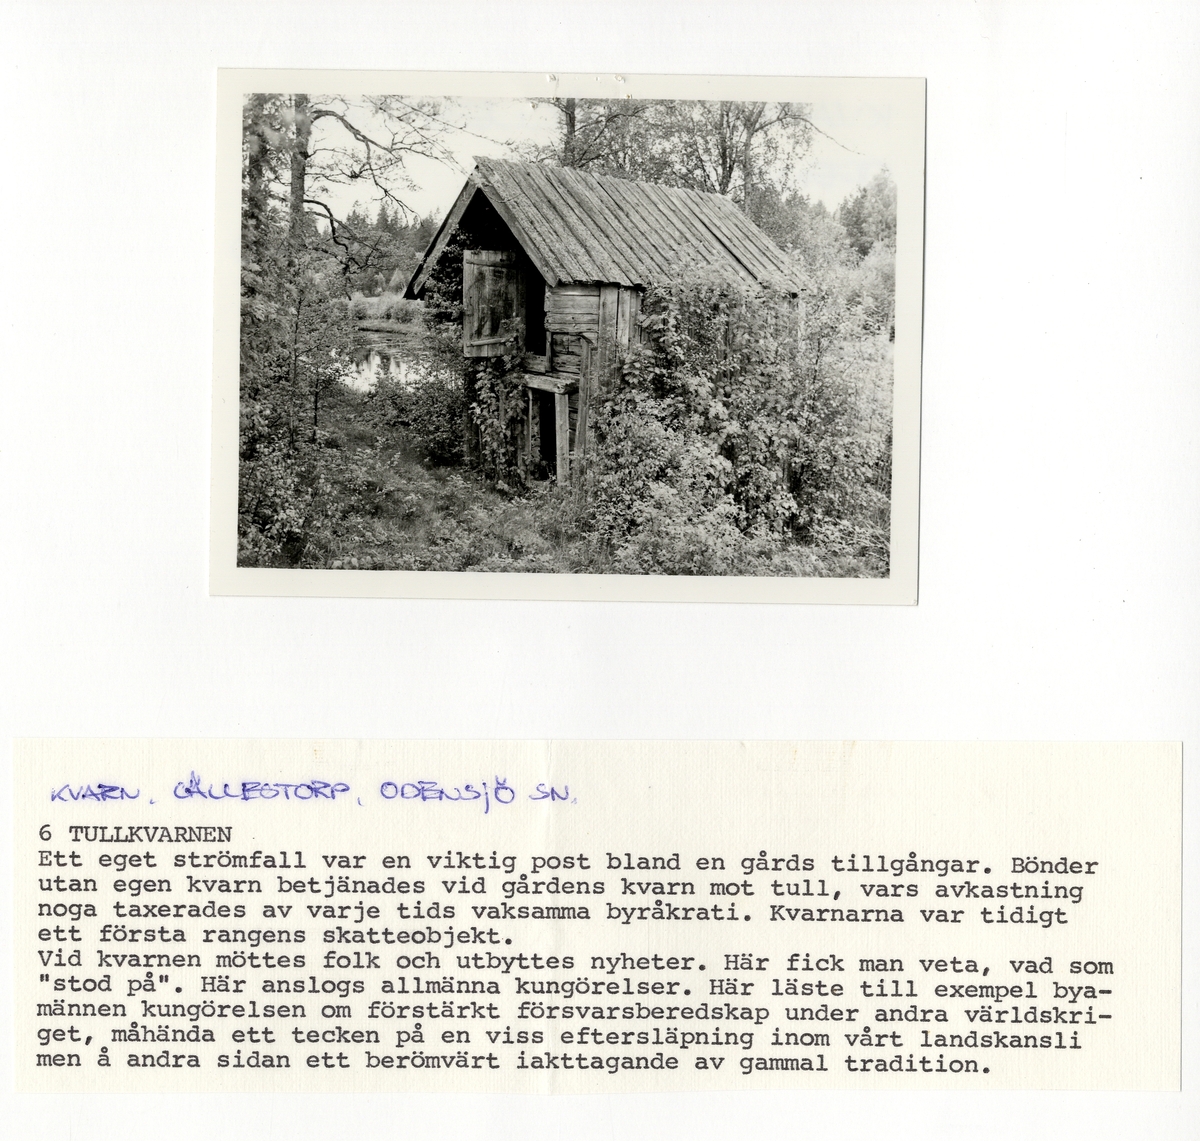 En s.k. tullkvarn från Gällestorp, Odensjö, med förklarande text.